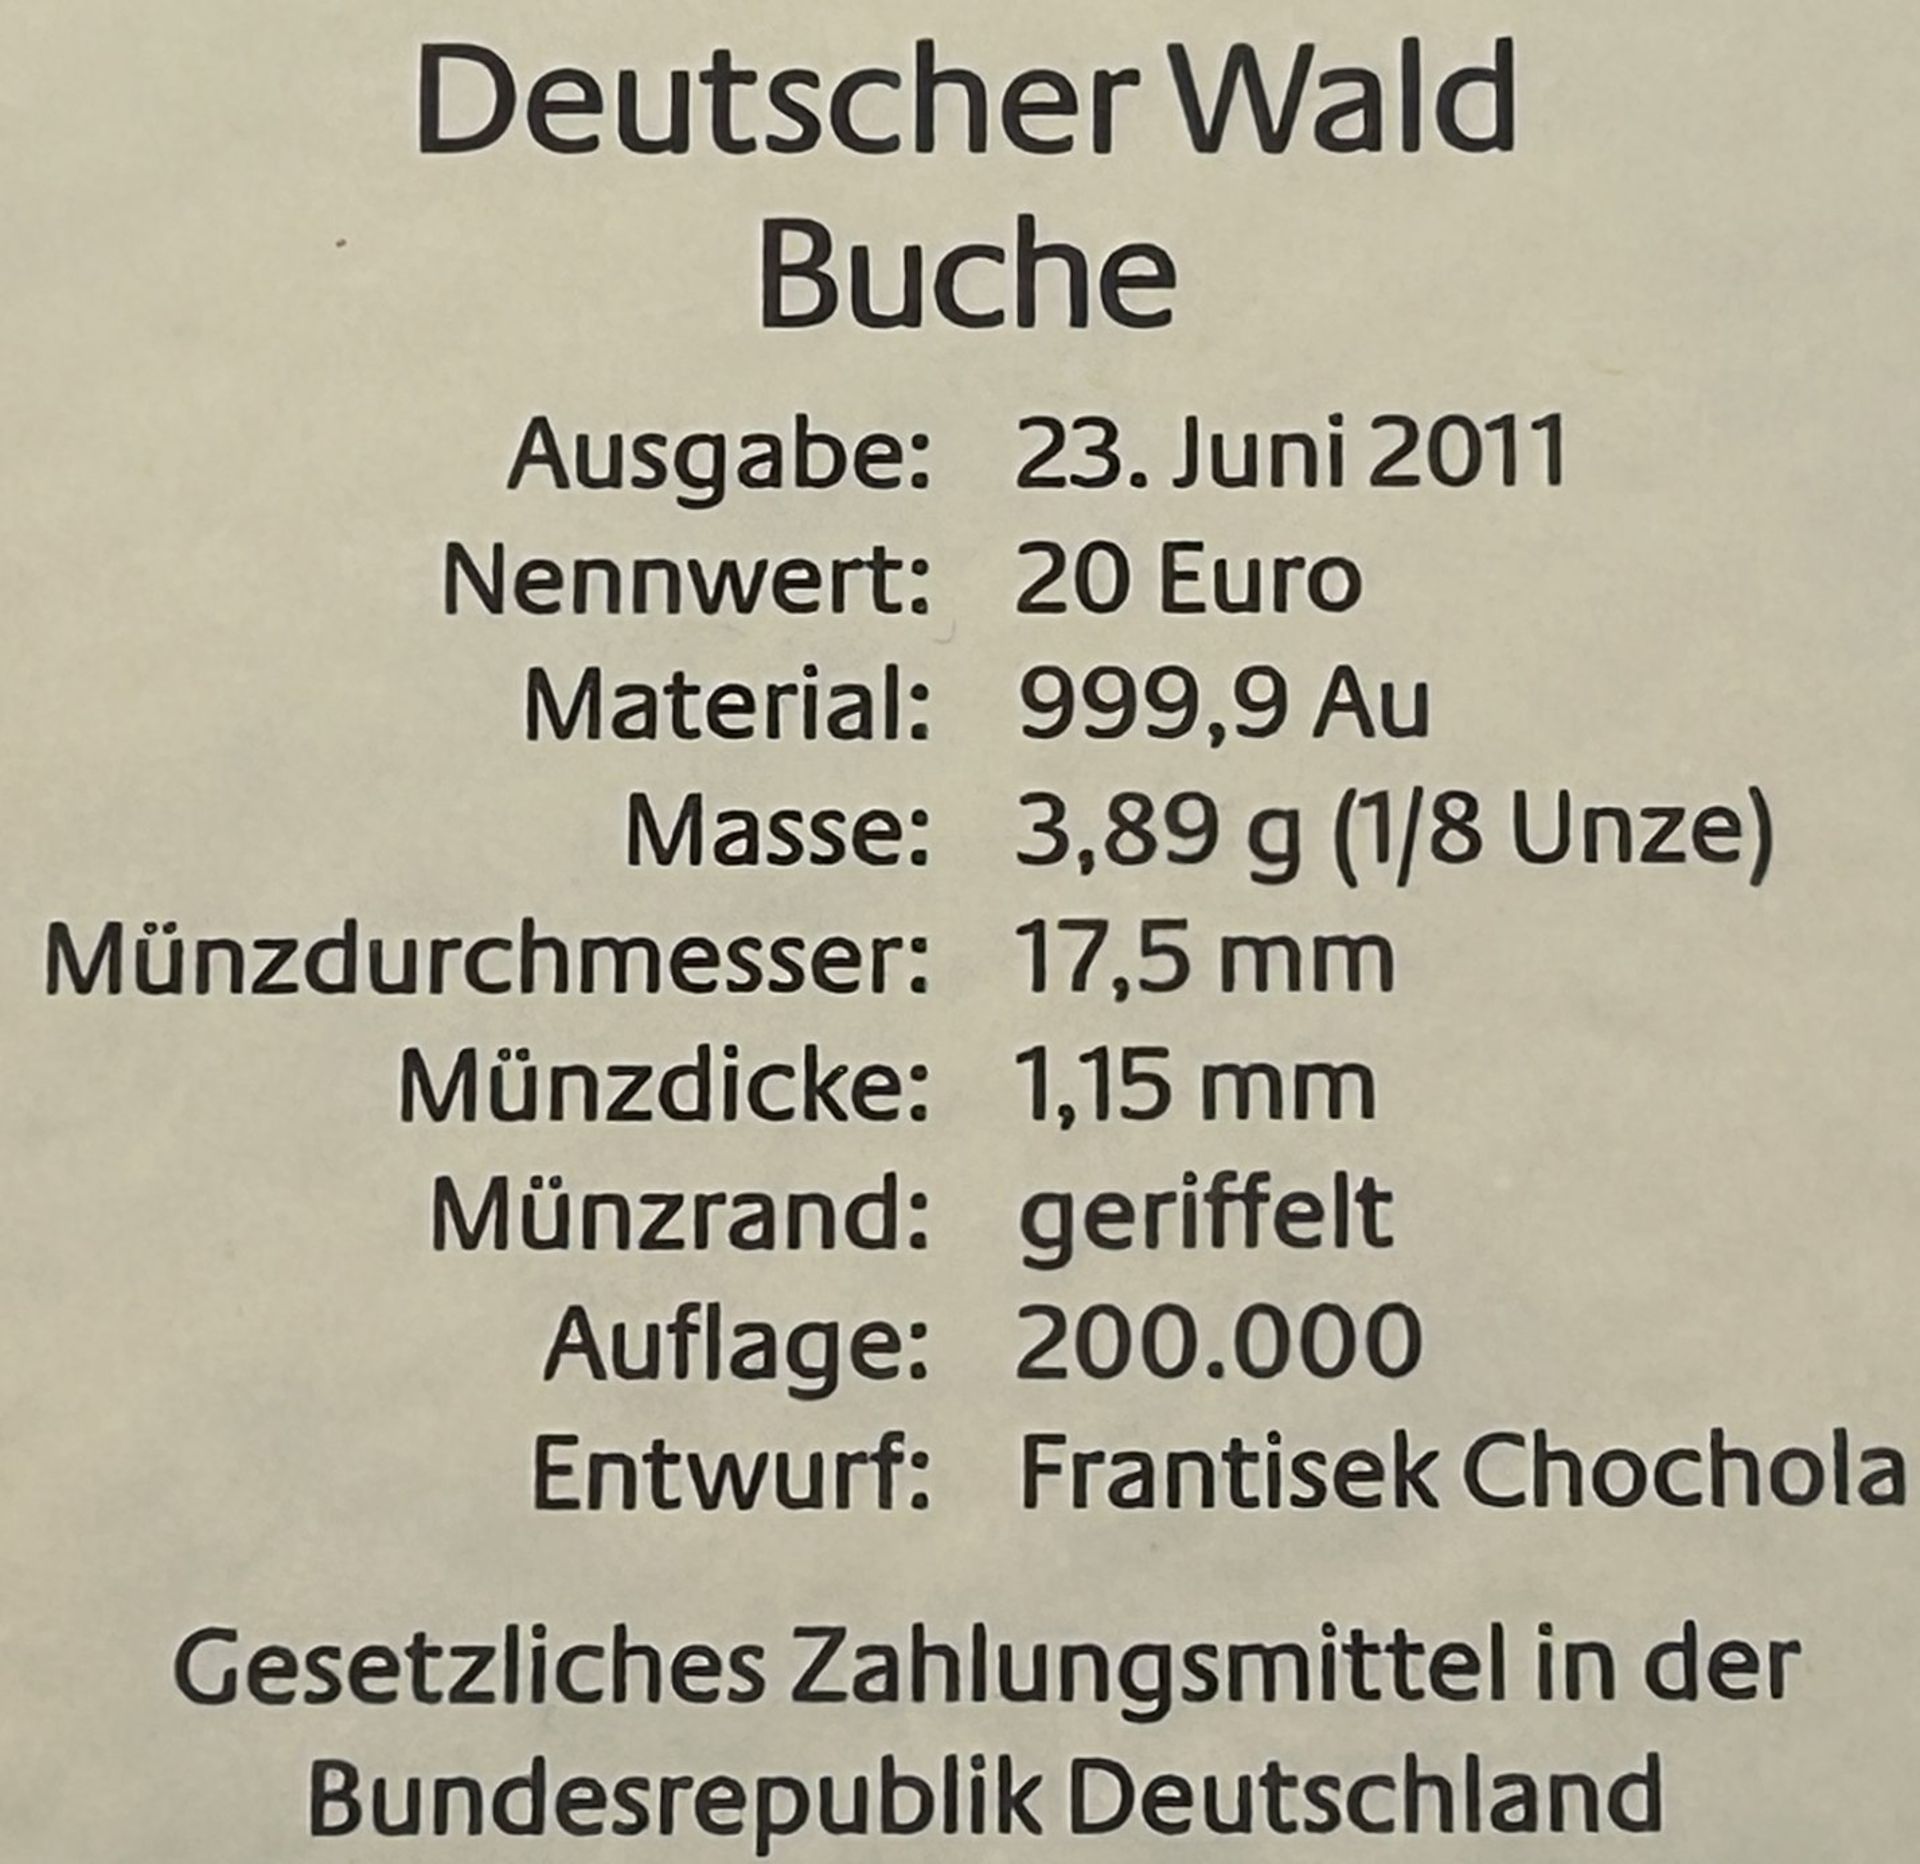 6x 20 € Goldmünzen-999-, Serie Der Deutsche Wald, mit Zertifikat, je 3,89 gramm (1/8 Unze), alle mi - Bild 6 aus 6